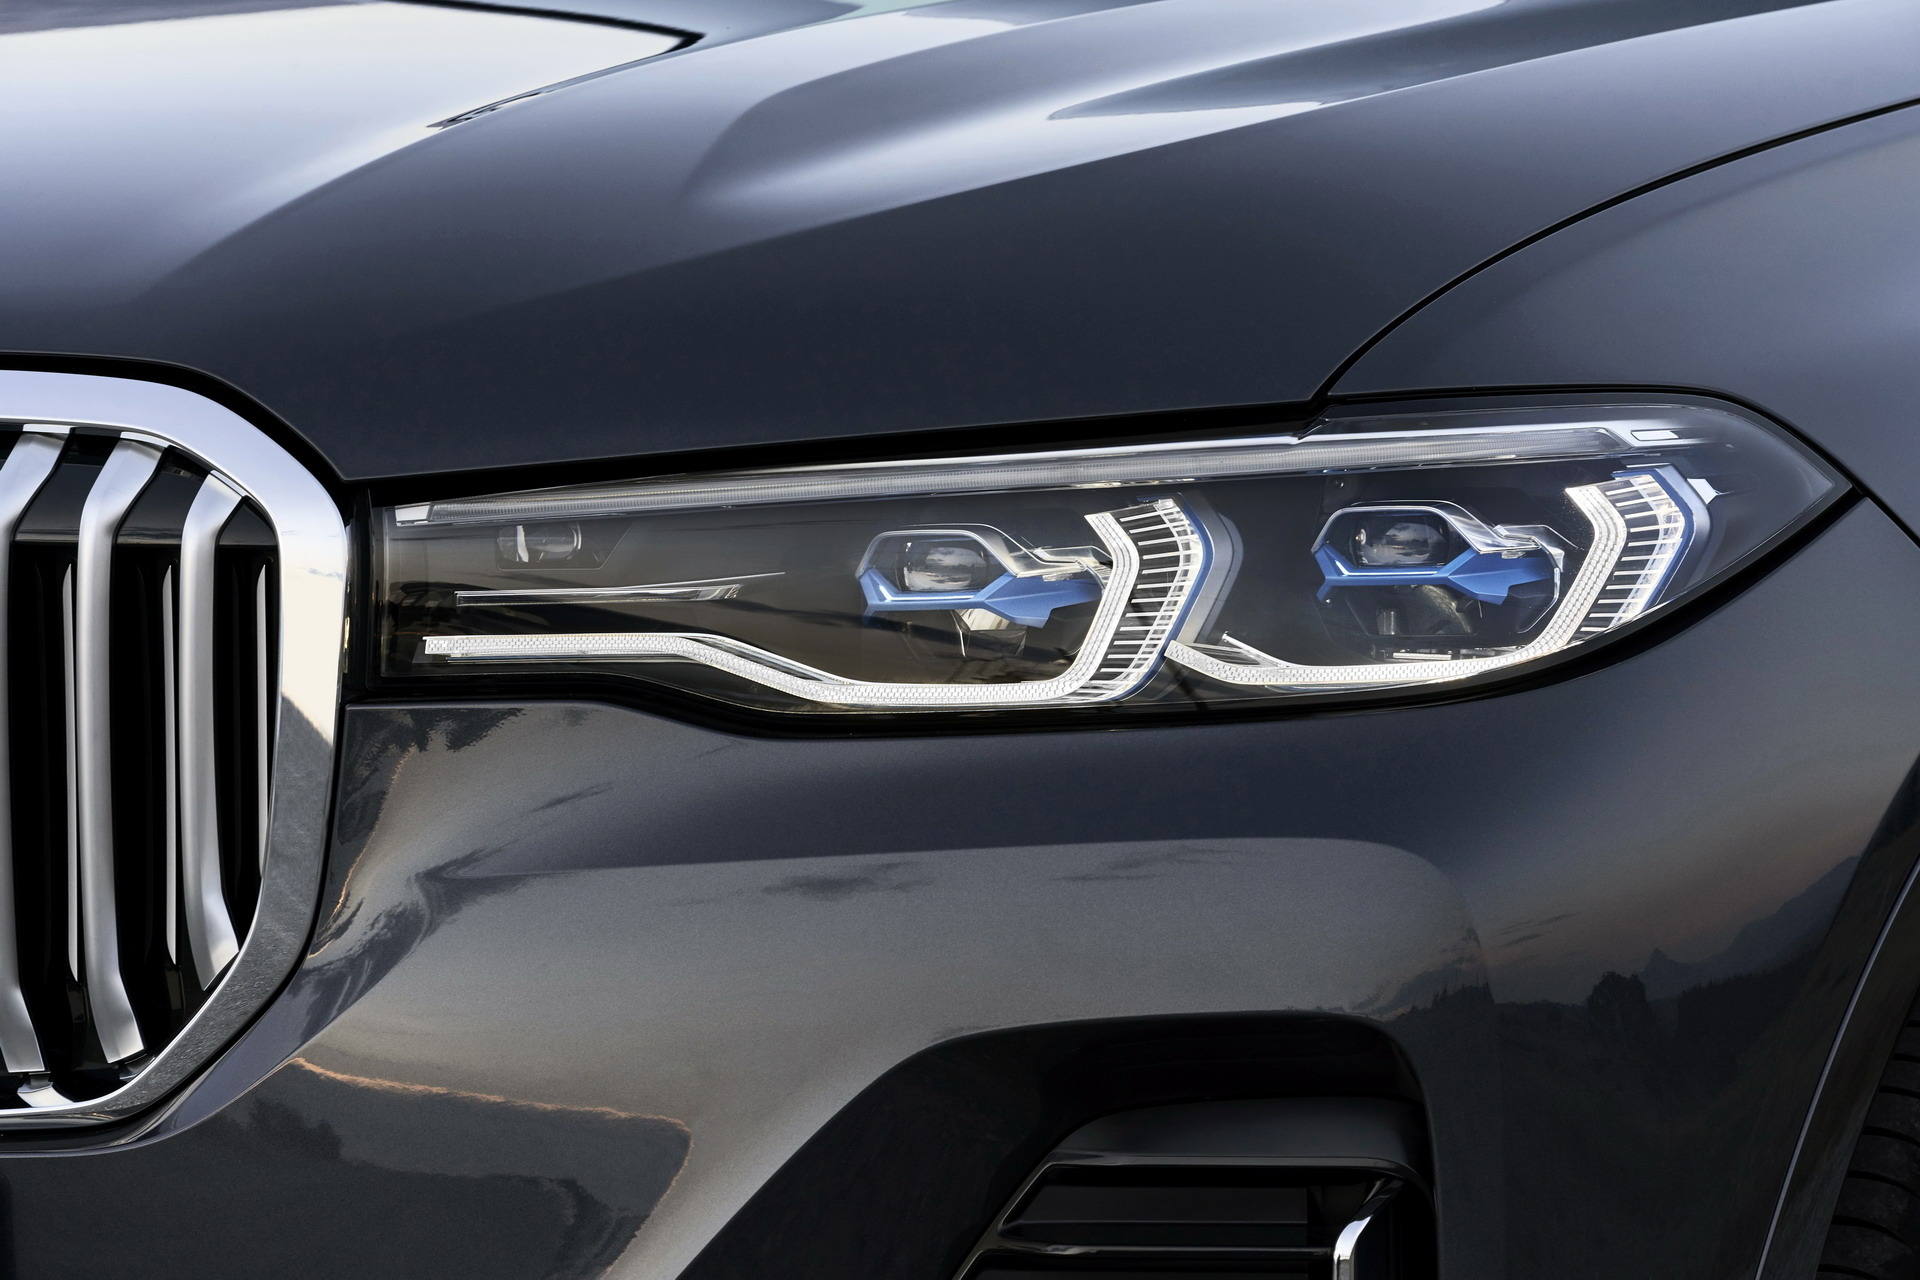 boeren Uitdrukking Buitenlander GUIDE: The Different BMW Headlights Technologies Explained